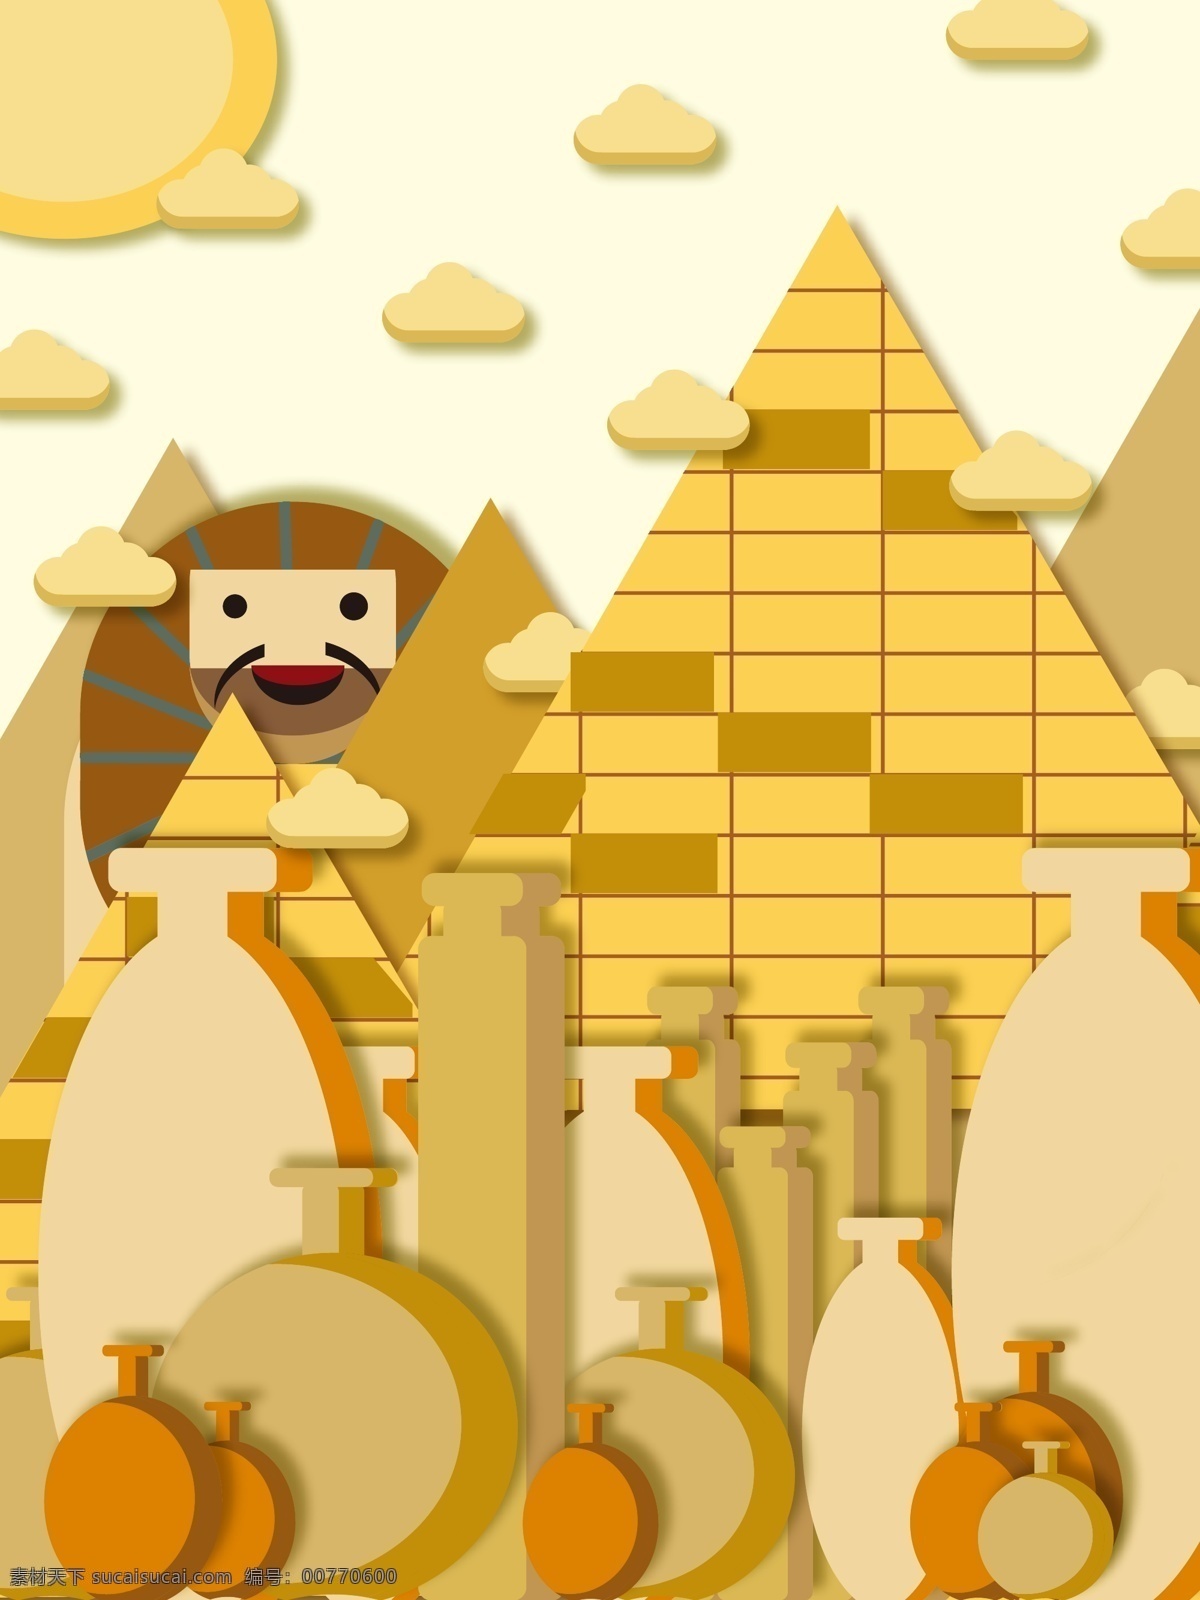 原创 剪纸 风 埃及 陶罐 金字塔 h5 背景 埃及金字塔 小清新 狮身人面像 剪纸风